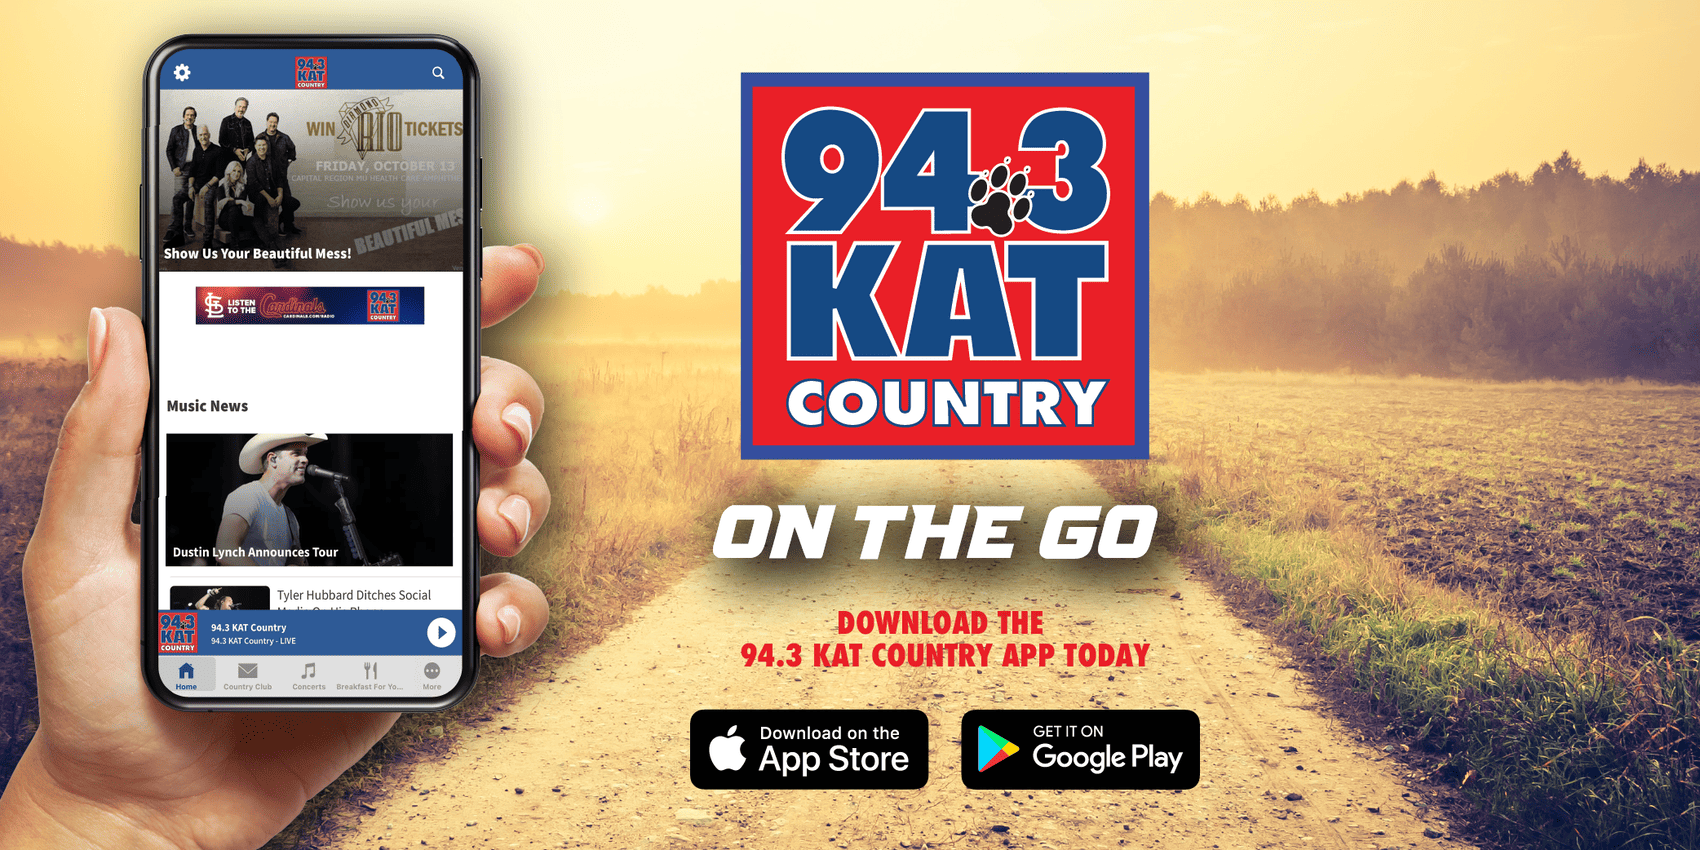 94.3 KAT Country App